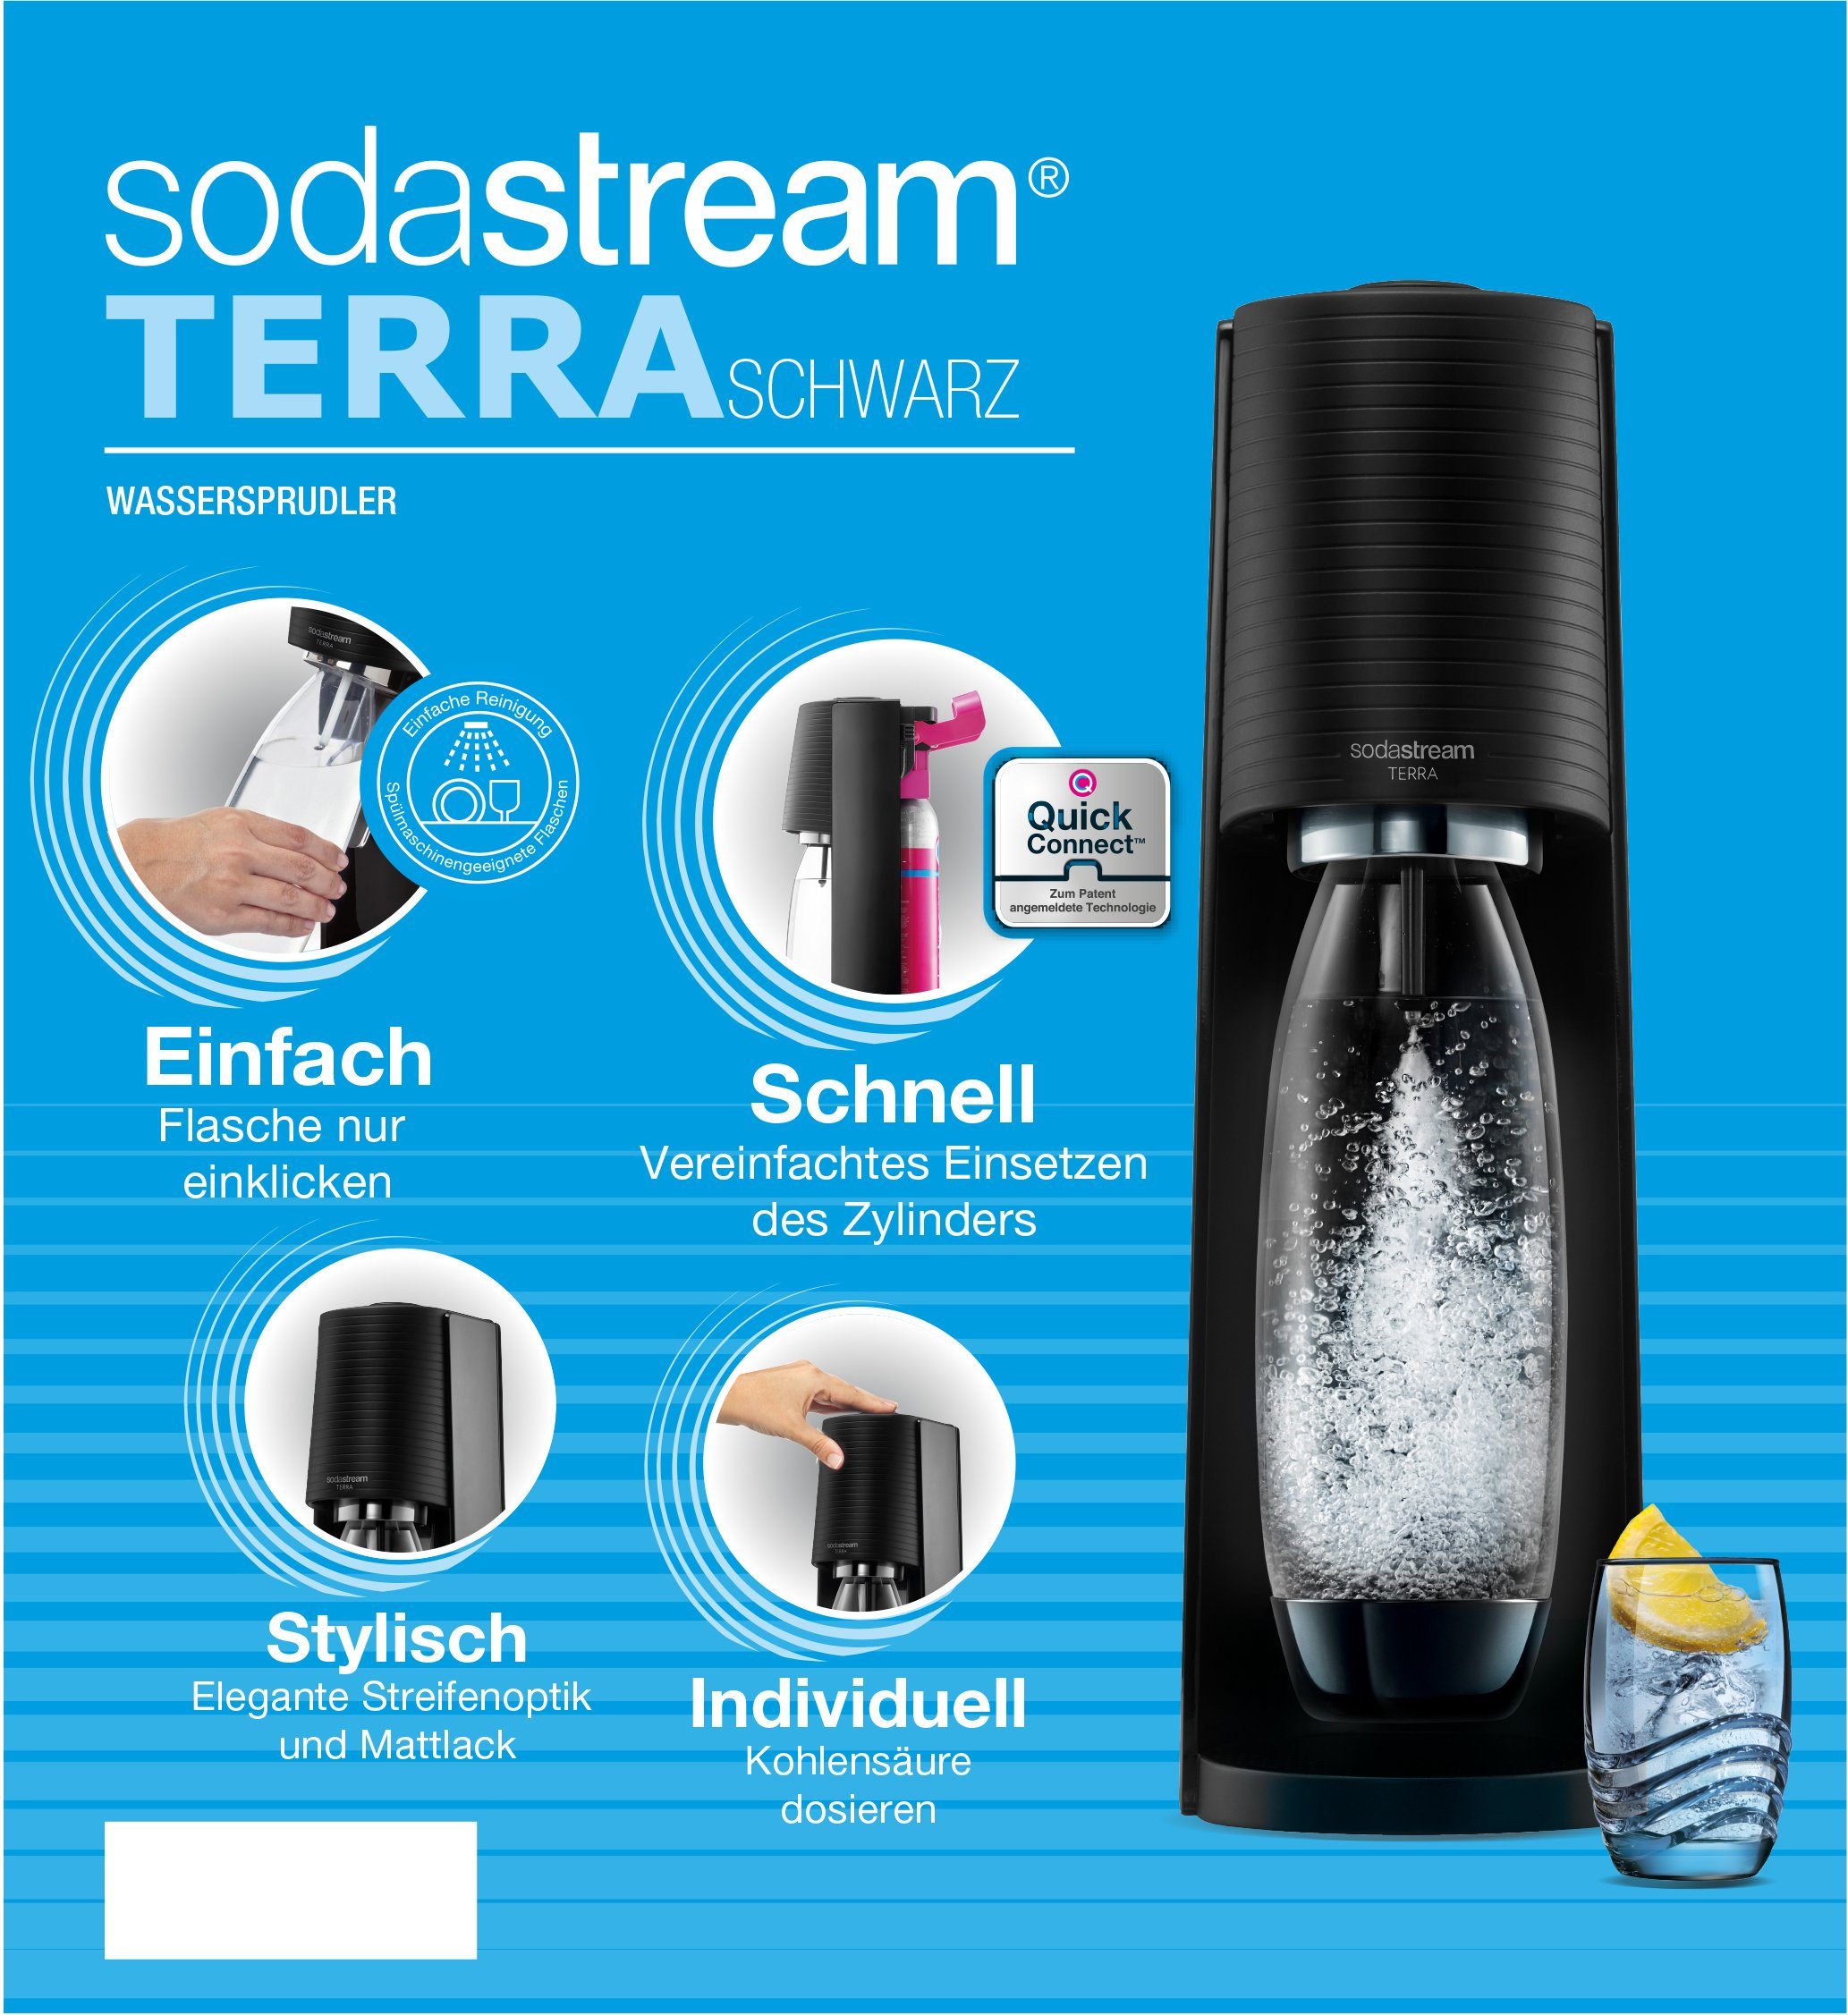 TERRA schwarz &CO2-Zylinder,1L, LKunststoff-Flasche Vorteilspack, SodaStream Wassersprudler 0,5